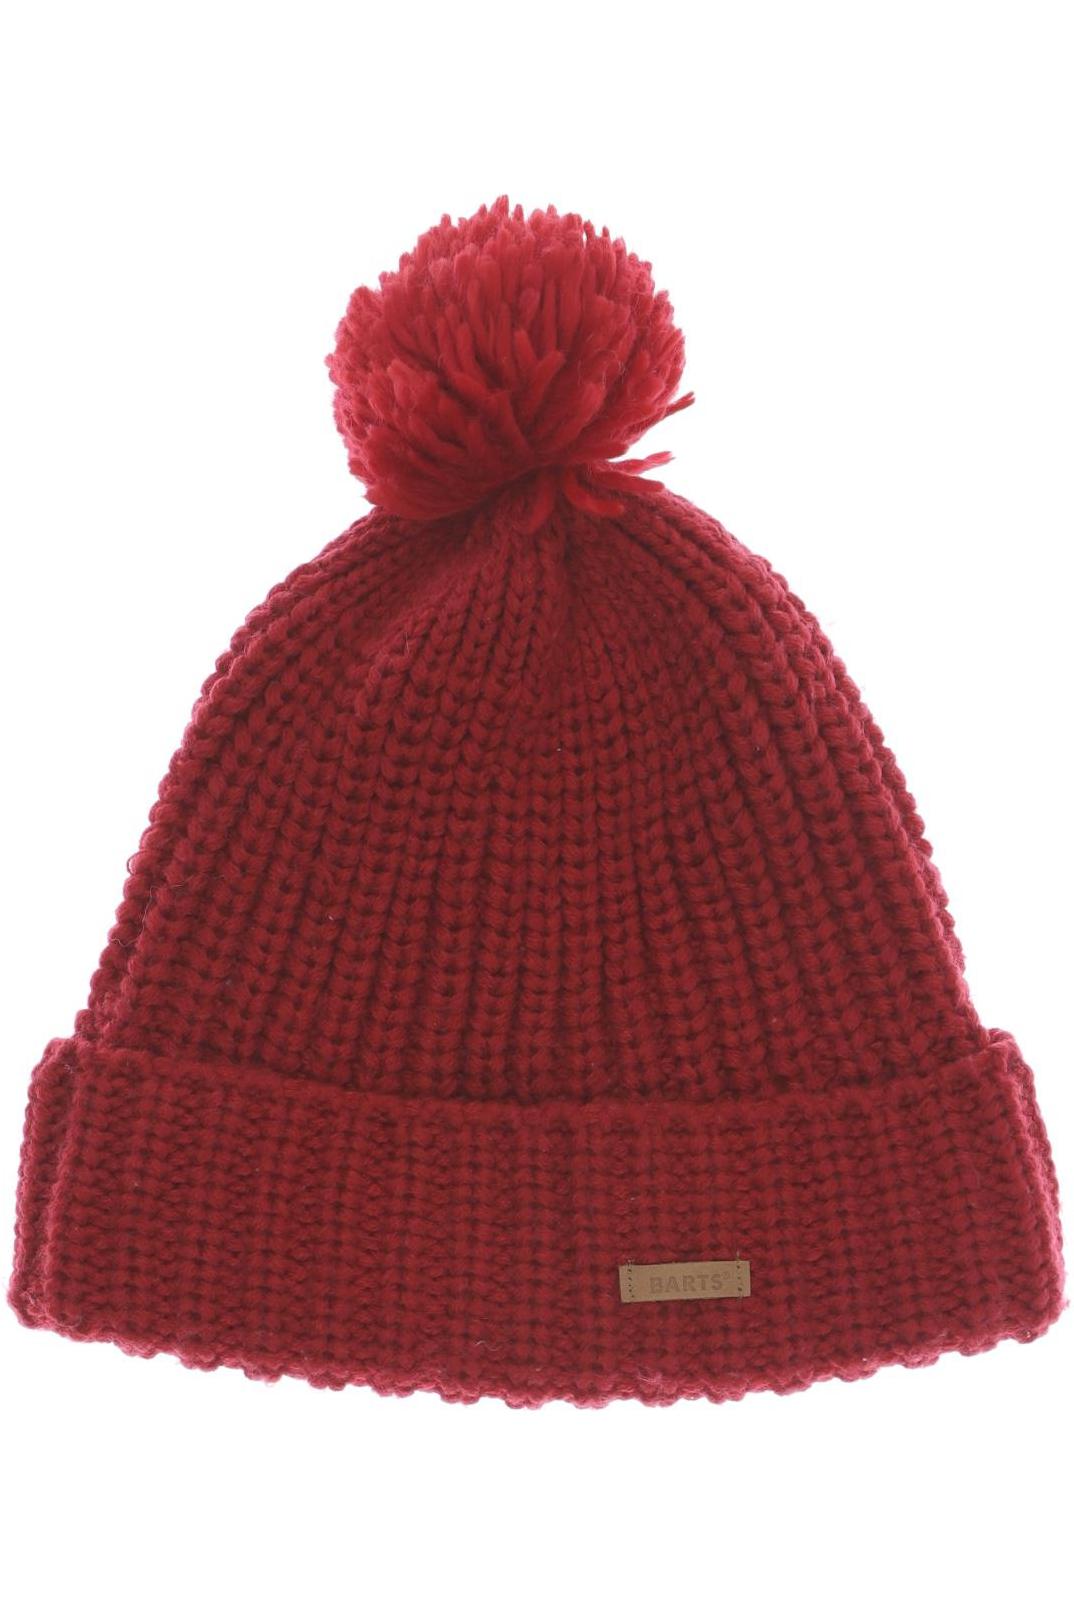 Barts Damen Hut/Mütze, rot von Barts